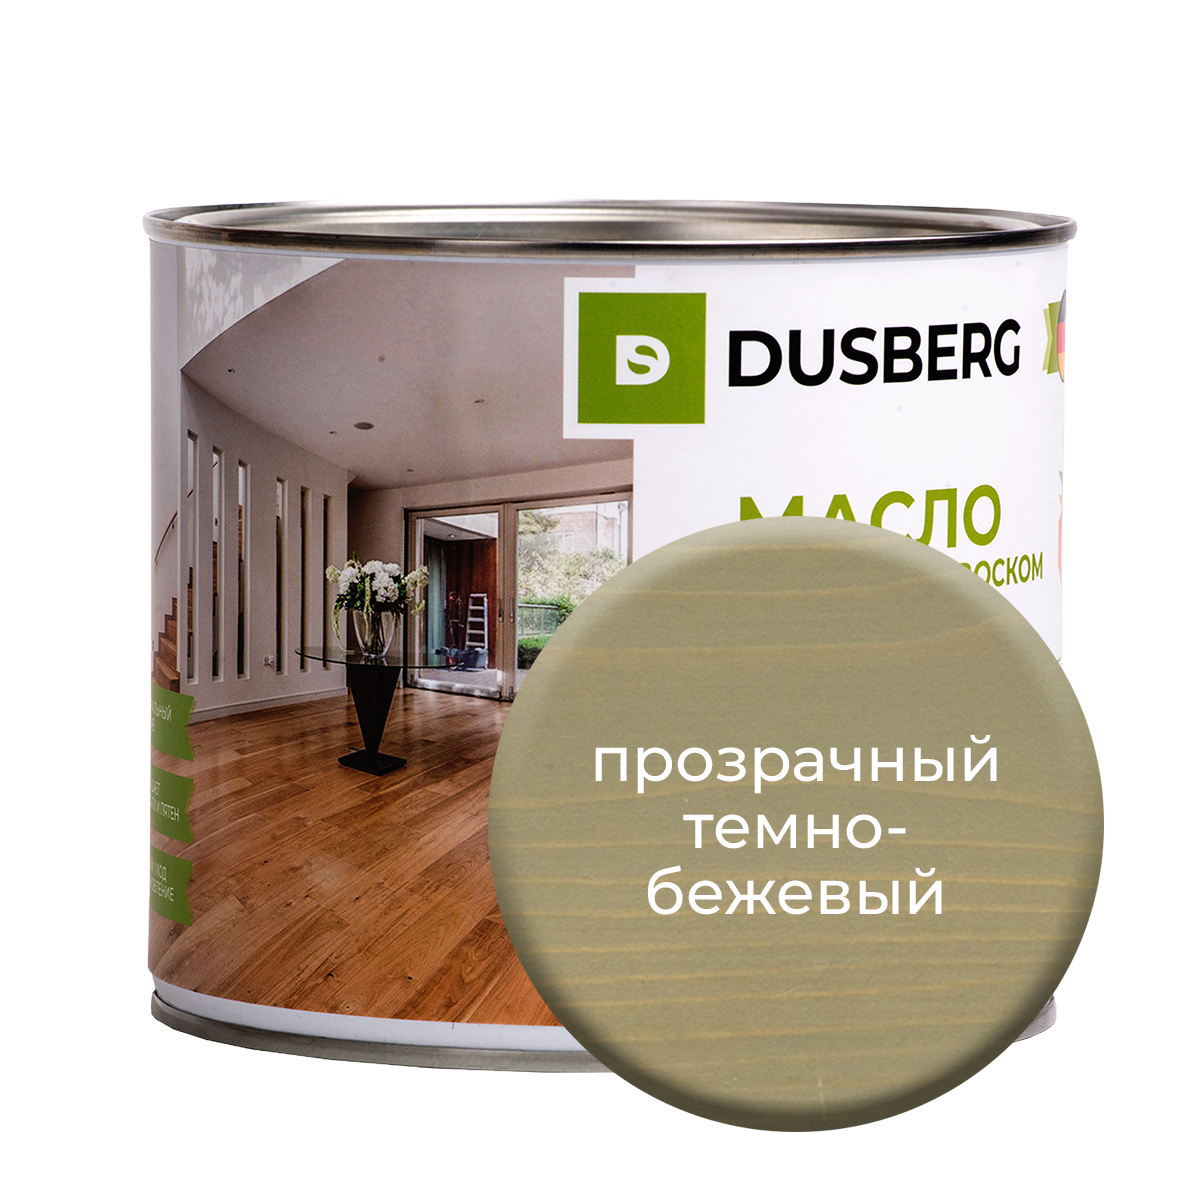 Масло Dusberg с твердым воском на бесцветной основе, 2 л Прозрачный темно-бежевый